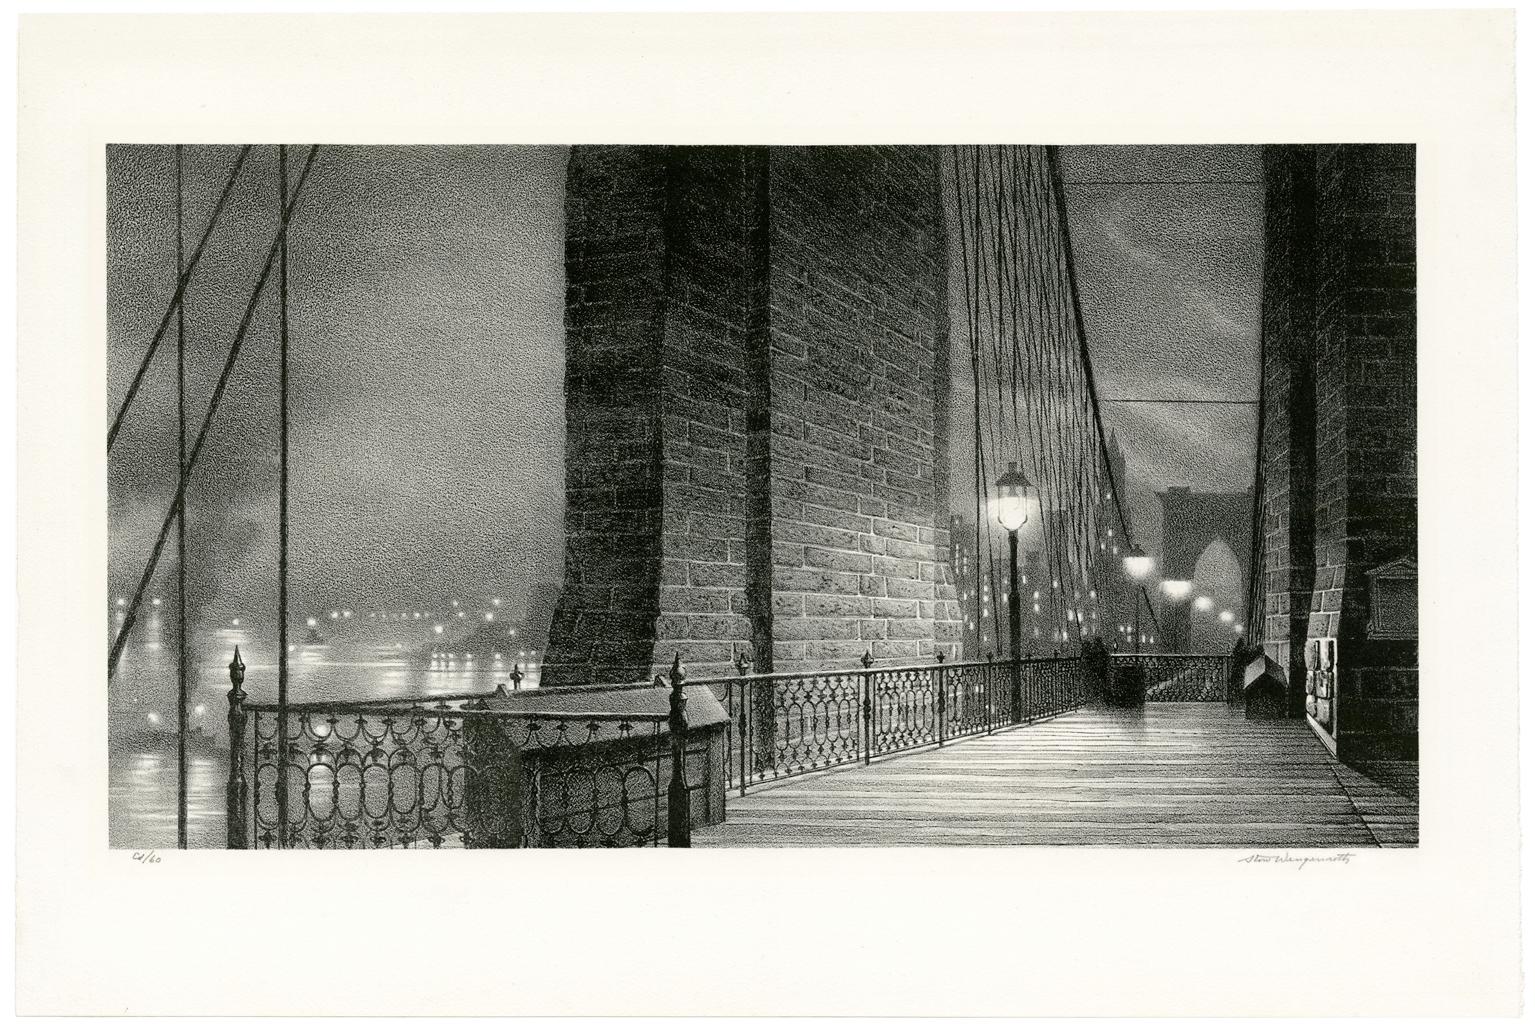 Manhattan Gateway (Brooklyn Bridge, Night) - Print by Stow Wengenroth